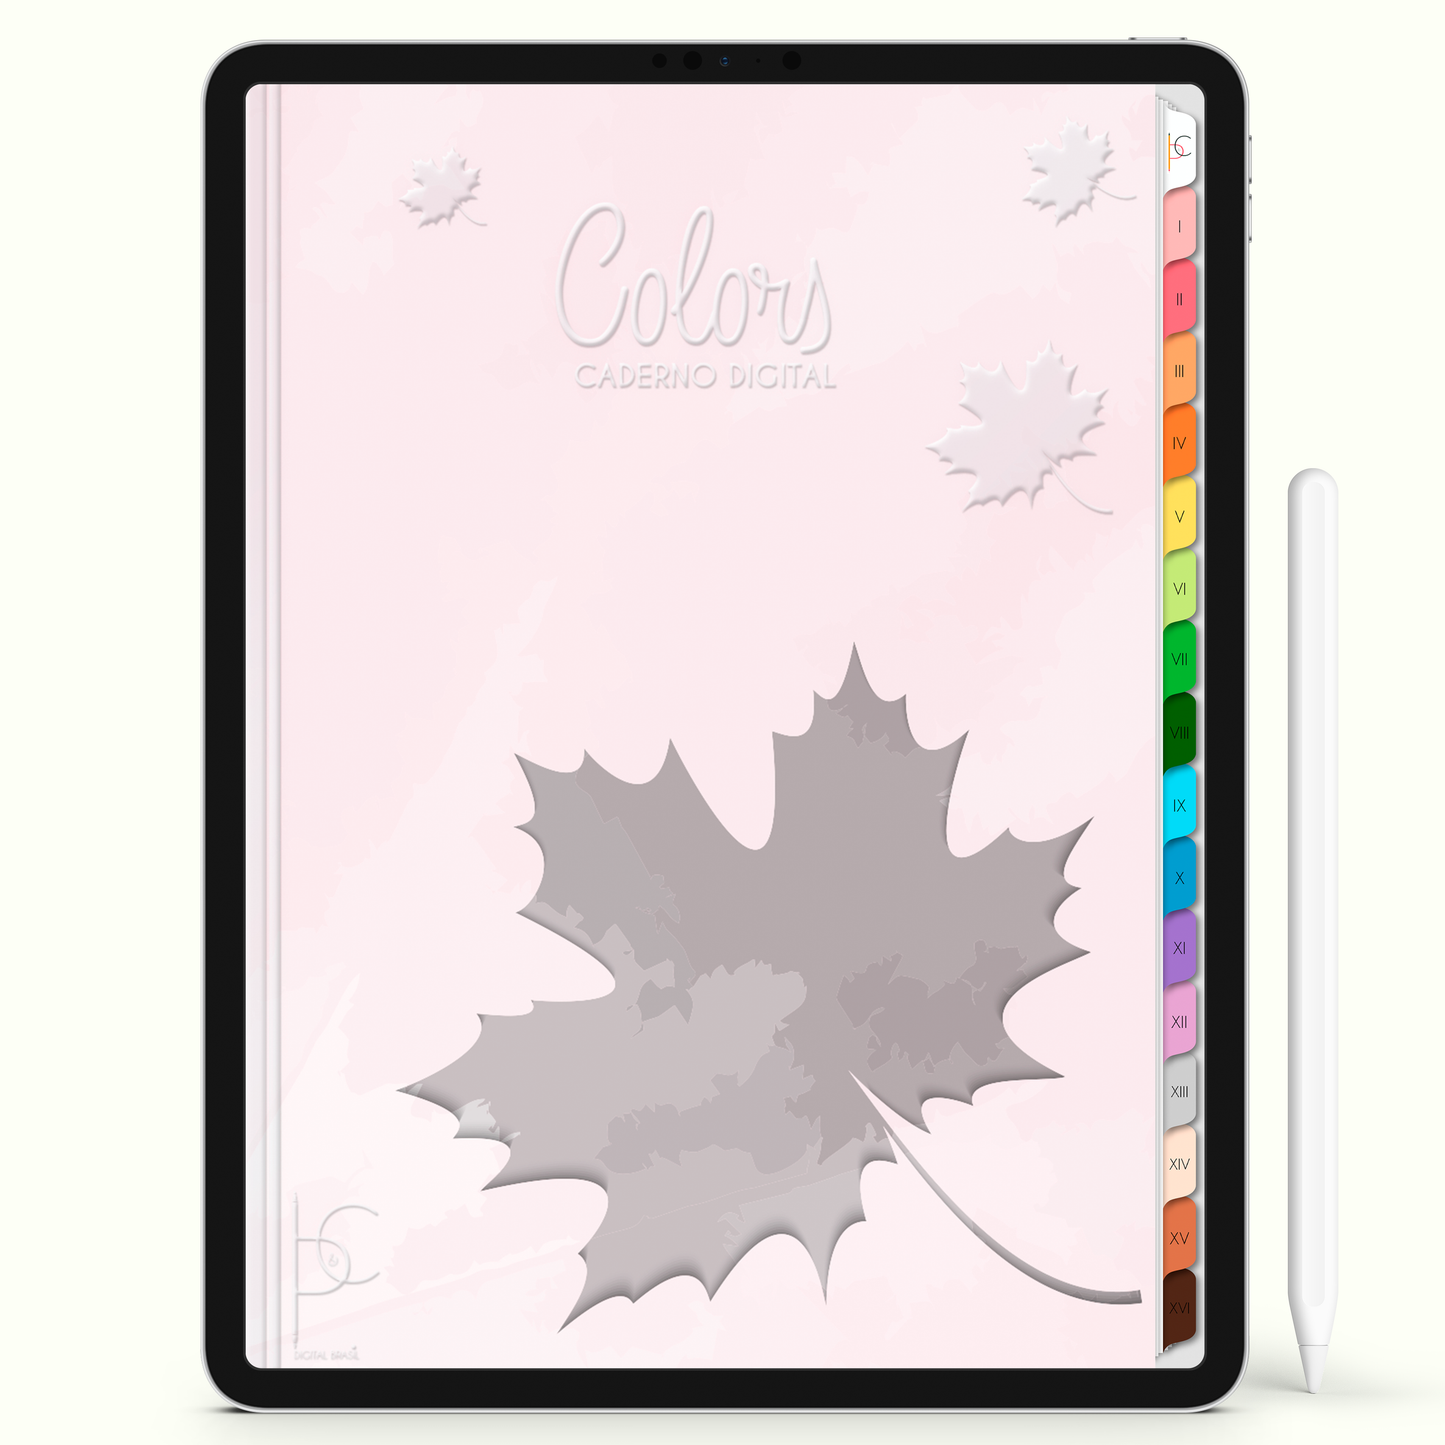 Caderno Digital Colors Outono 16 Matérias • Para iPad e Tablet Android • Download instantâneo • Sustentável